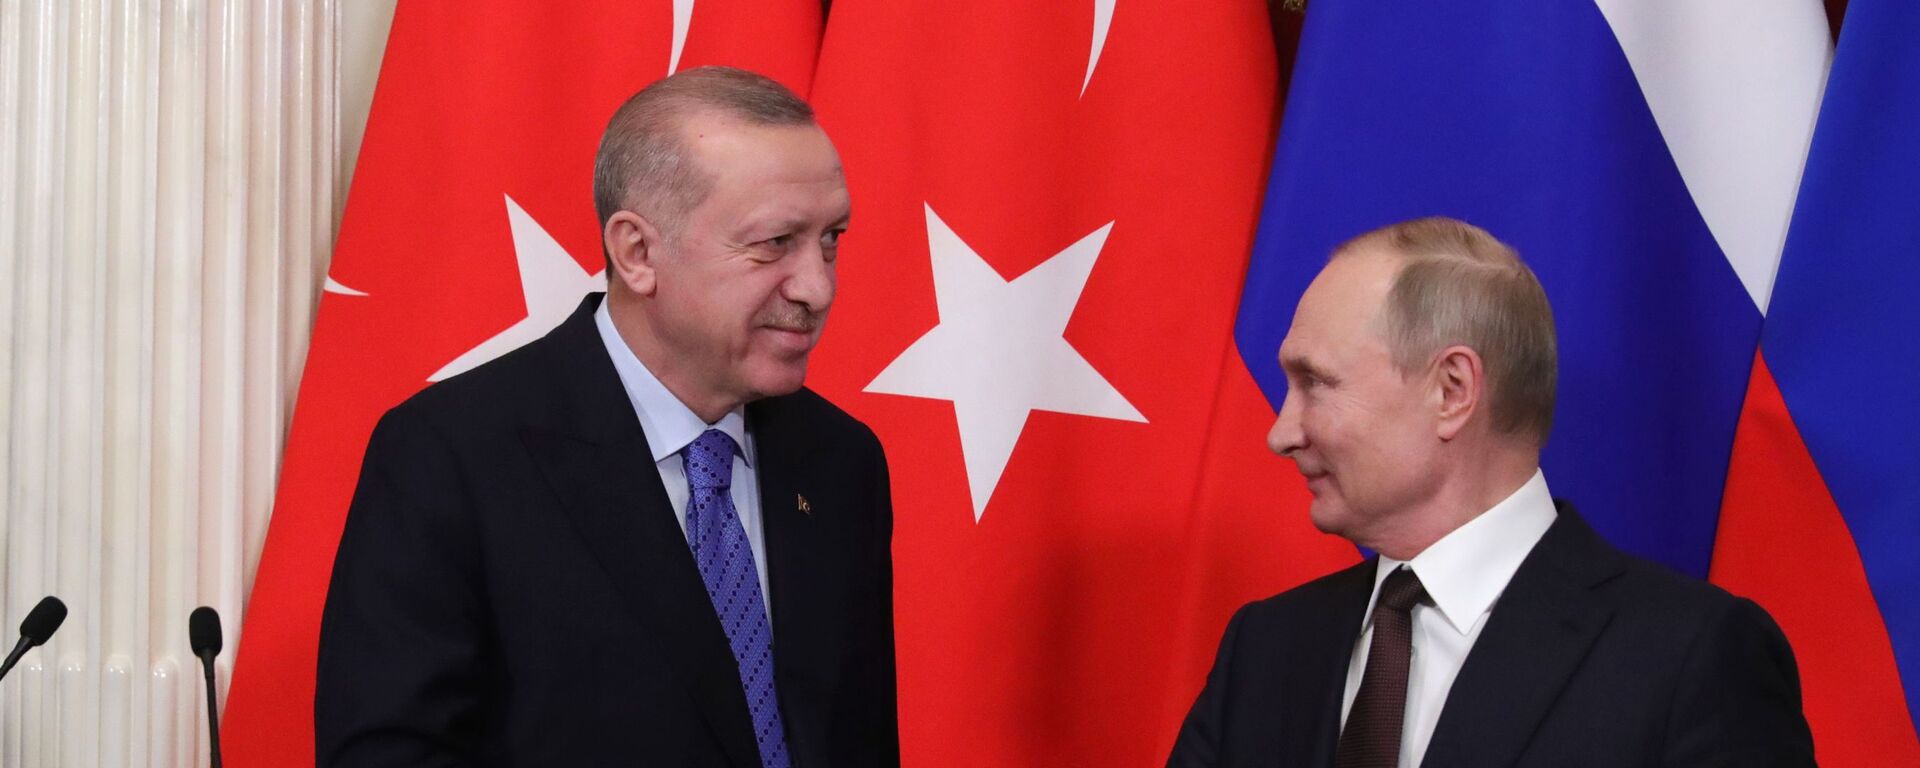 Cuộc gặp giữa Tổng thống Nga Vladimir Putin và Tổng thống Thổ Nhĩ Kỳ Recep Tayyip Erdogan tại Điện Kremlin, Matxcơva  - Sputnik Việt Nam, 1920, 07.08.2022